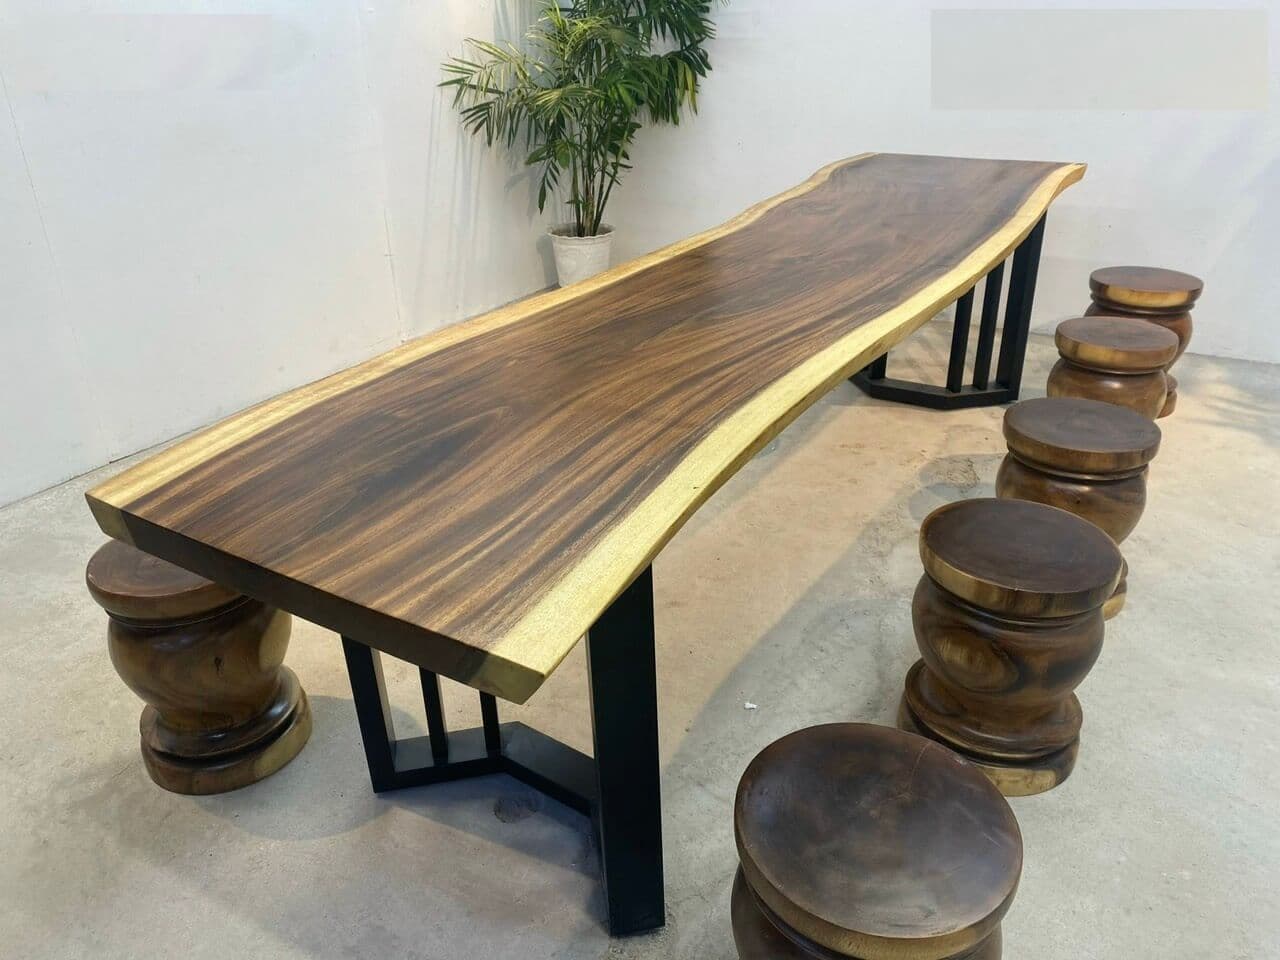 Mẫu bàn ăn thiết kế đơn giản nhưng vẫn luôn nổi bật với những đường vân gỗ đẹp mắt 